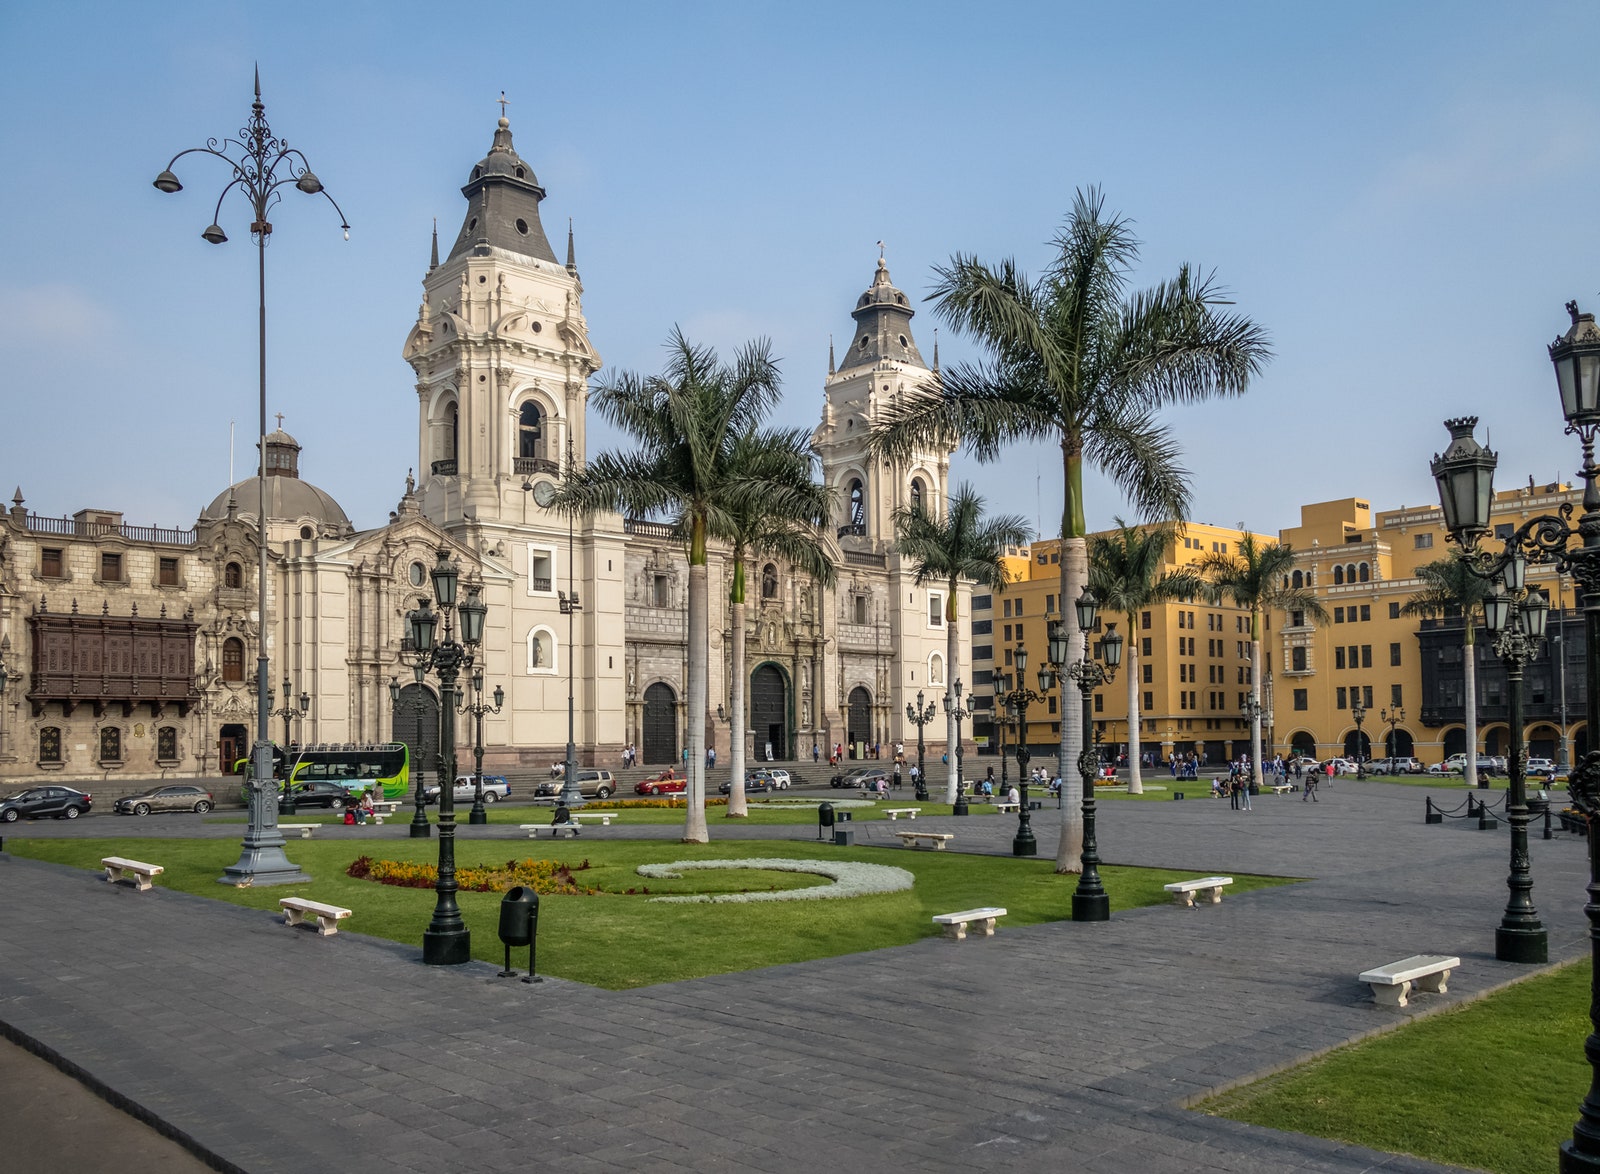 Центральная площадь Лимы — Plaza de Armas.